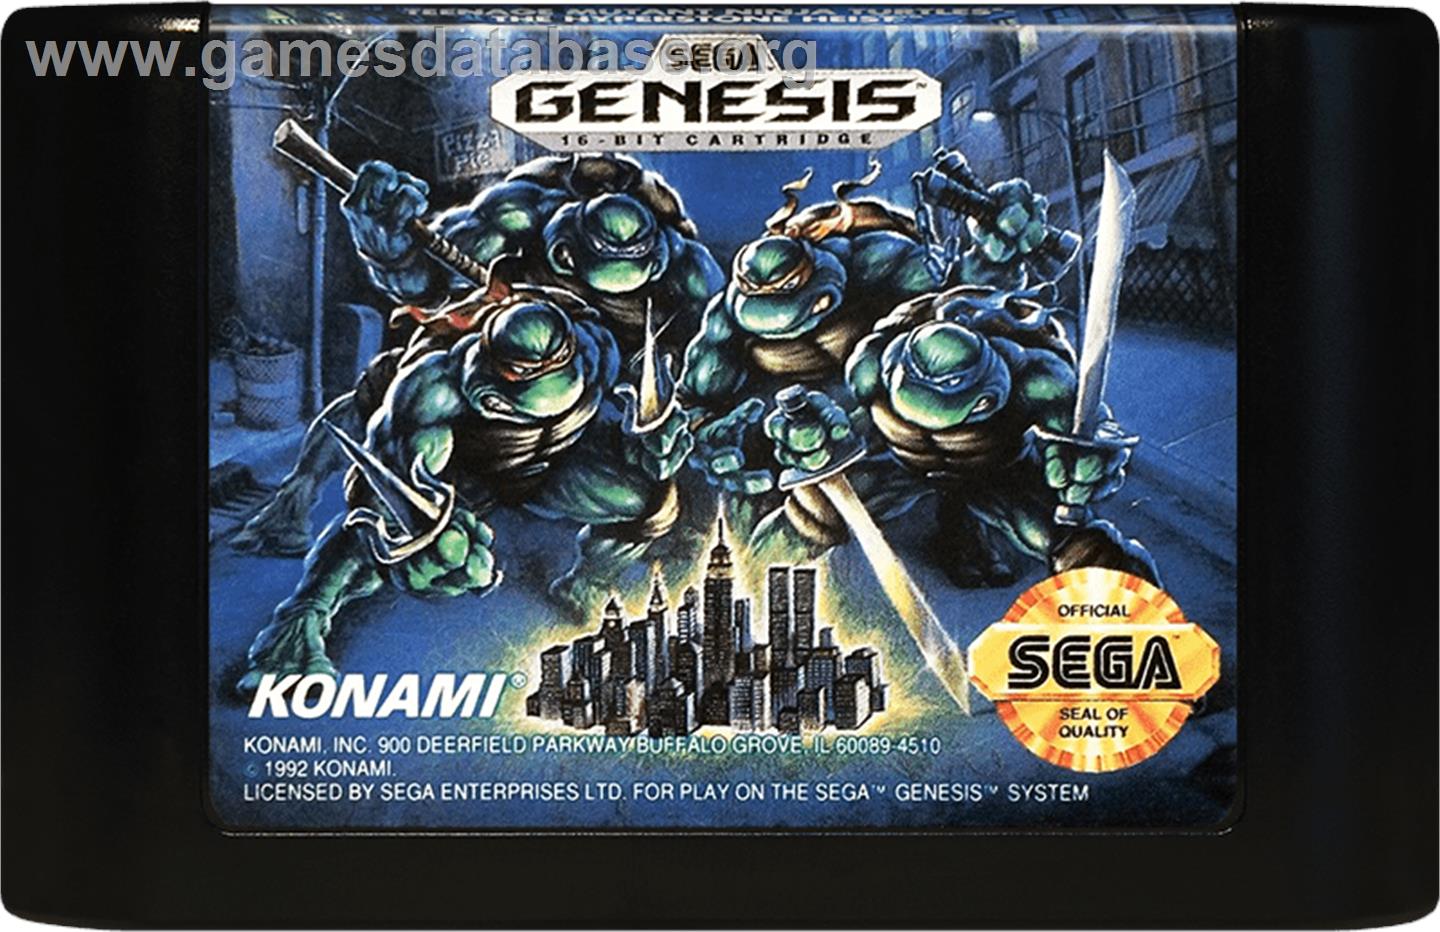 Teenage Mutant Ninja Turtles: The HyperStone Heist - Sega Genesis - Artwork - Cartridge